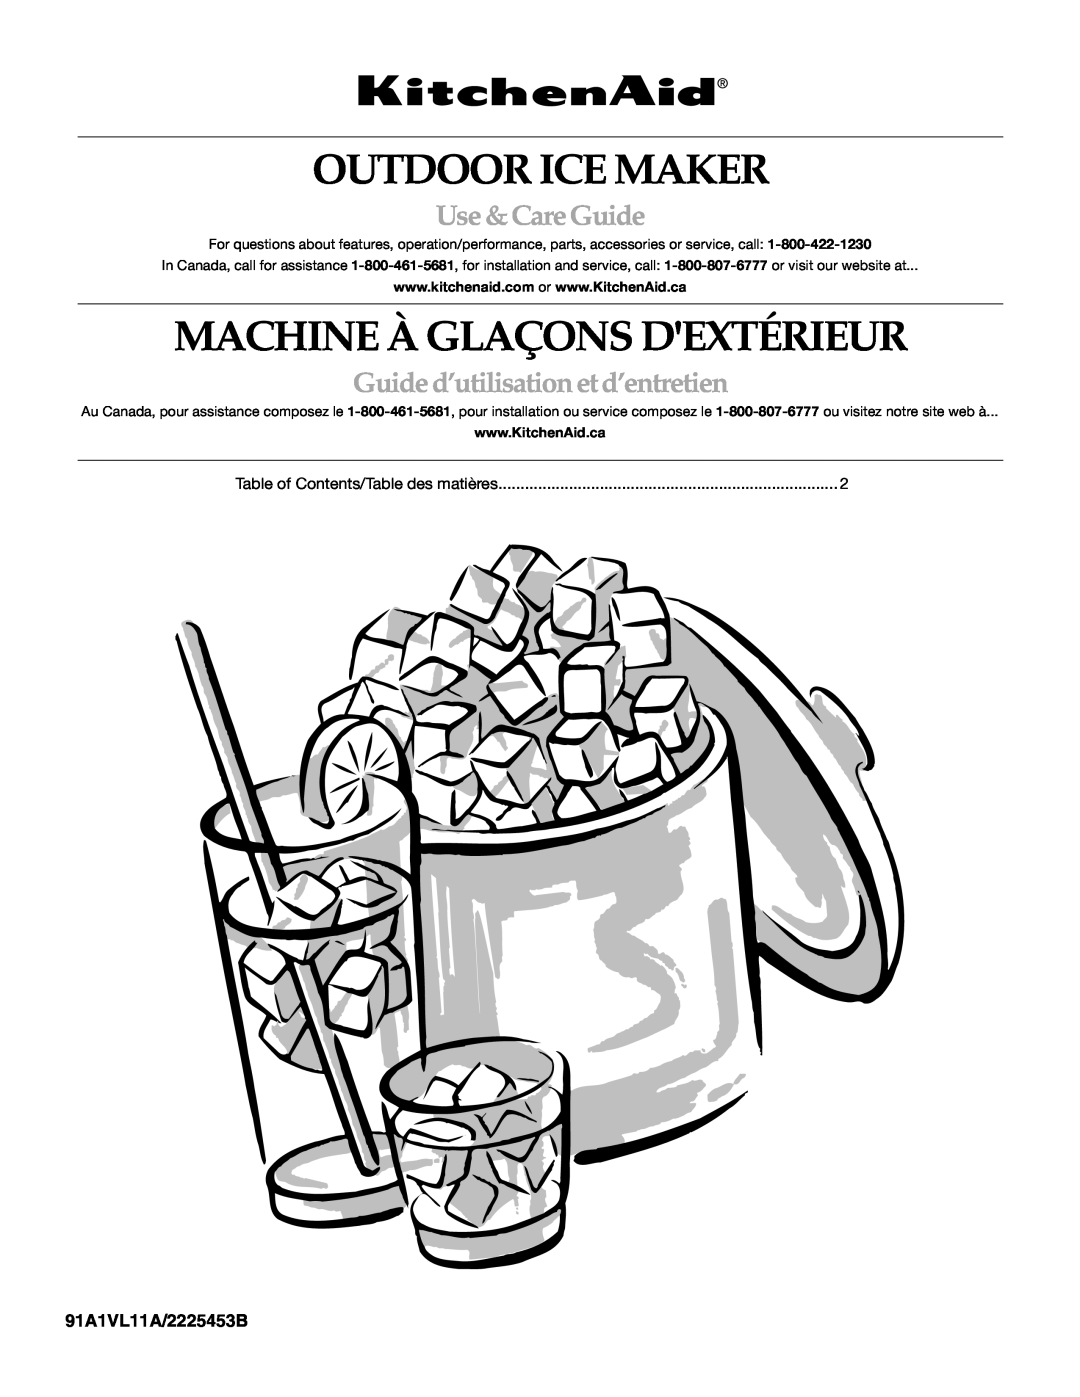 KitchenAid KUIO15NNLS manual Outdoor Ice Maker, Machine À Glaçons Dextérieur, Use & Care Guide, 91A1VL11A/2225453B 